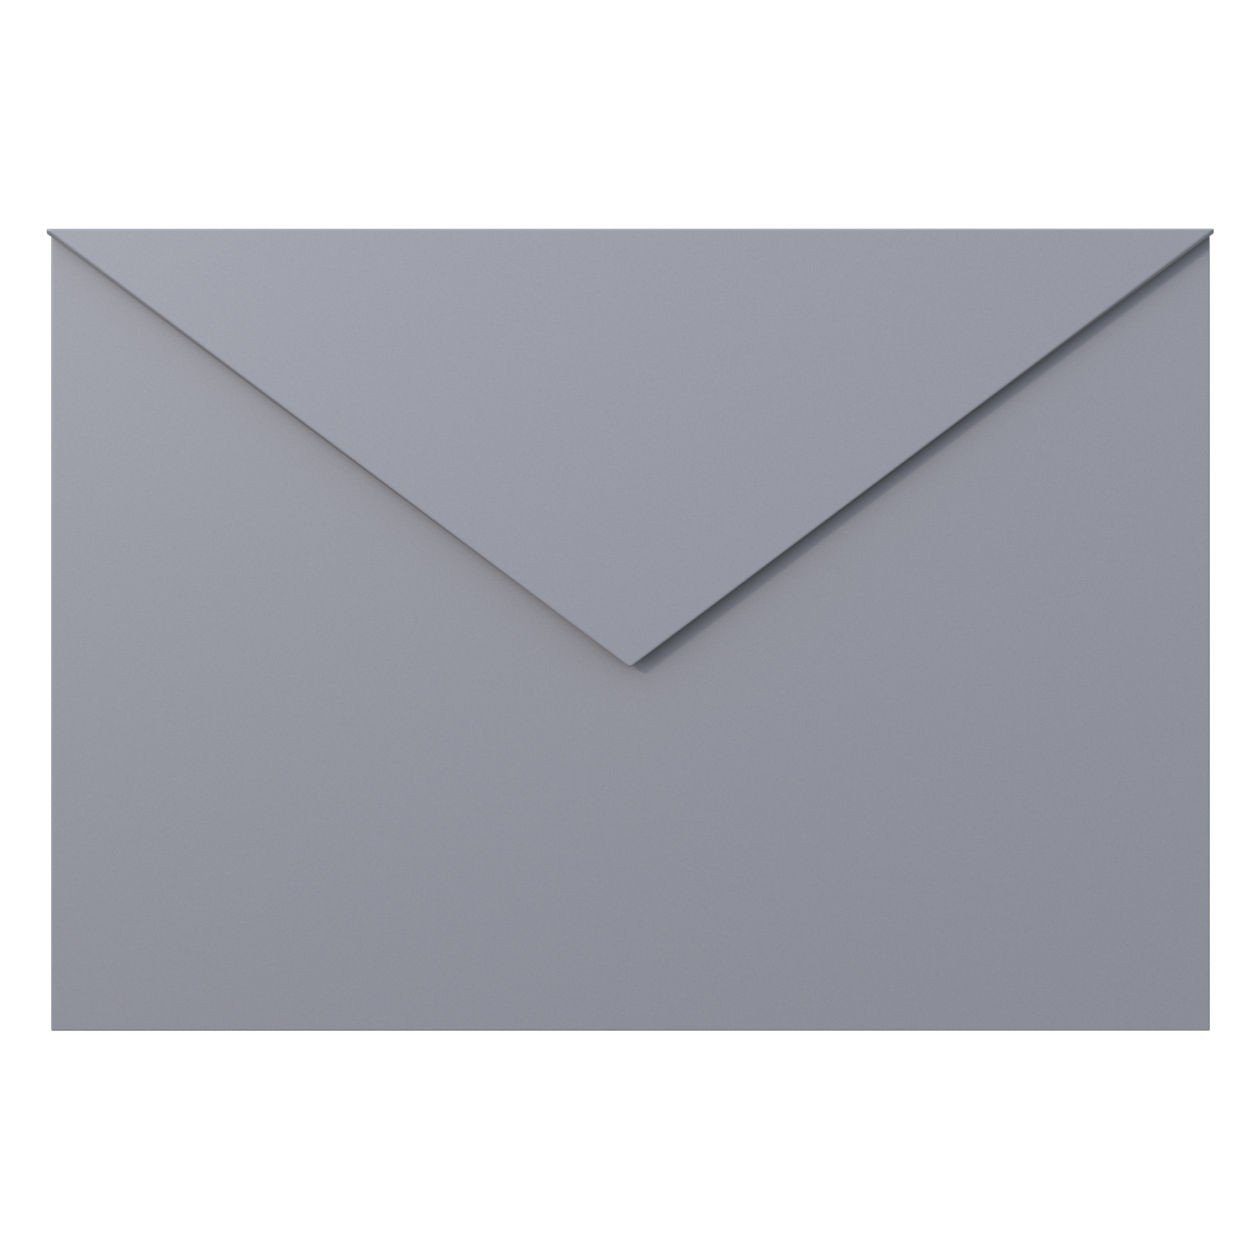 Bravios Briefkasten Grau Briefkasten Metallic Letter